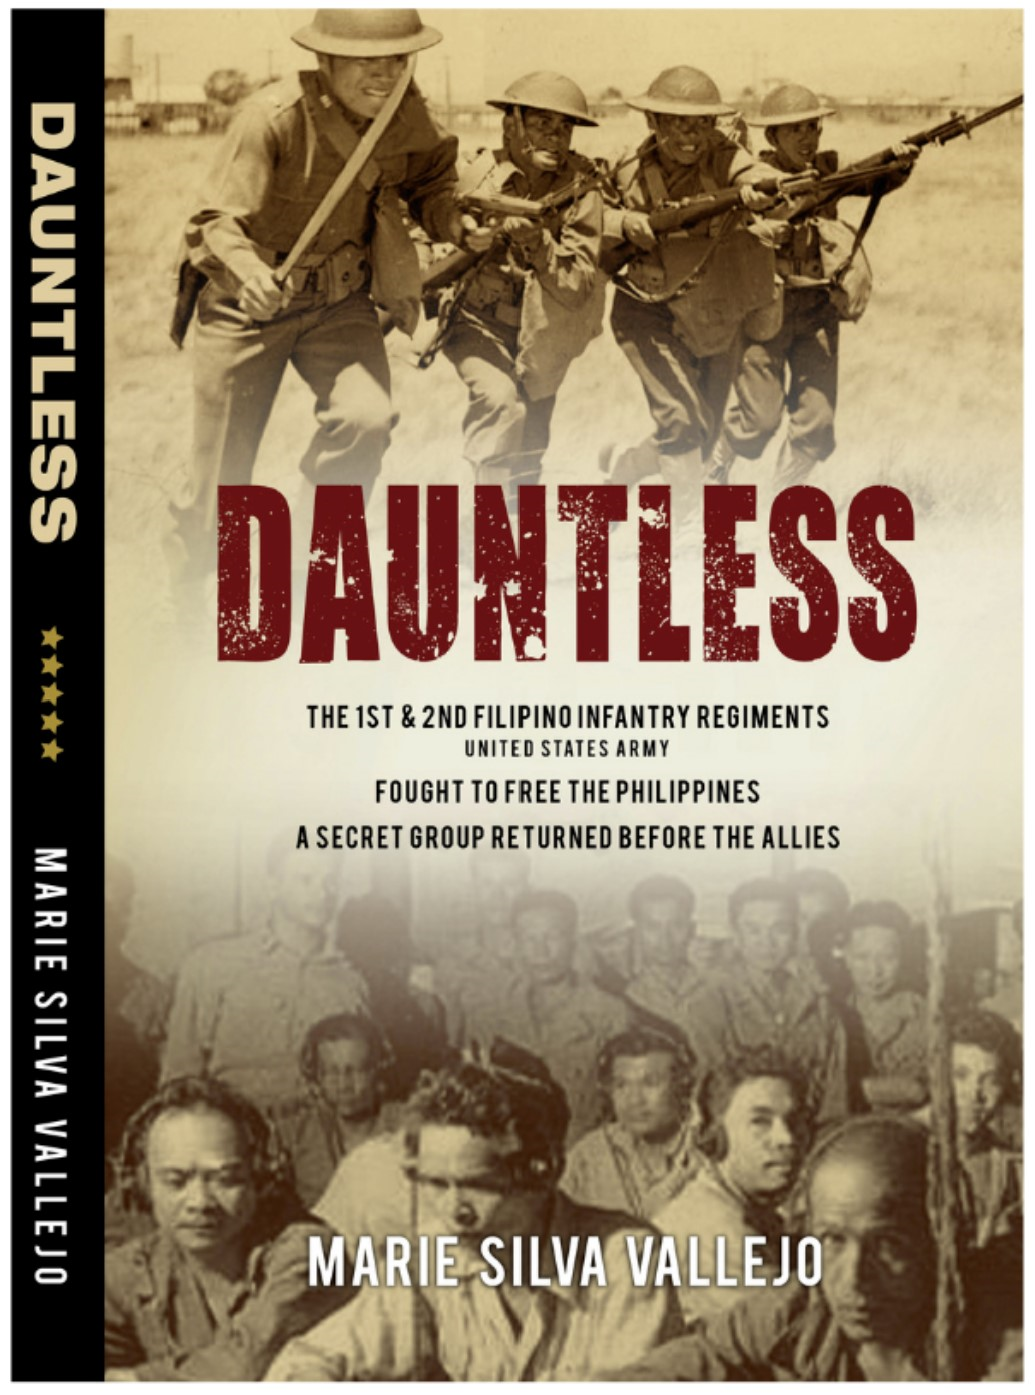 Book cover of "Dauntless"